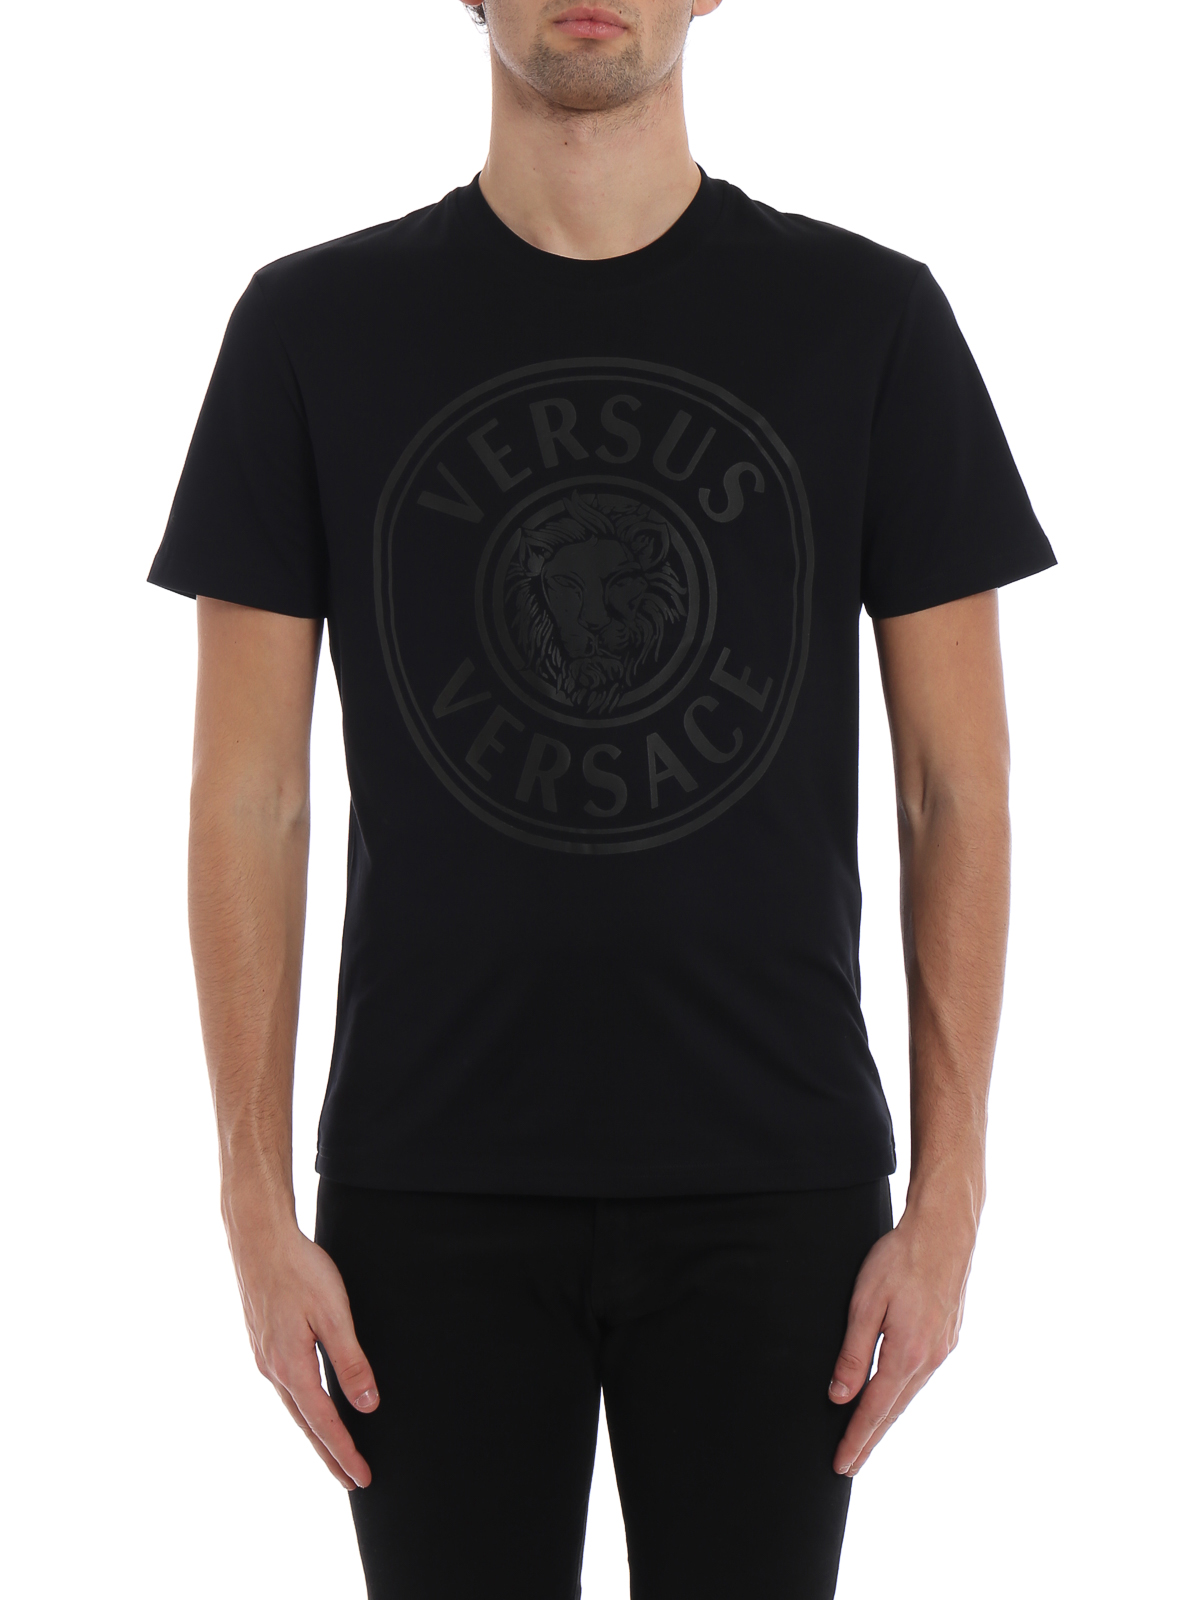 versus versace black t shirt